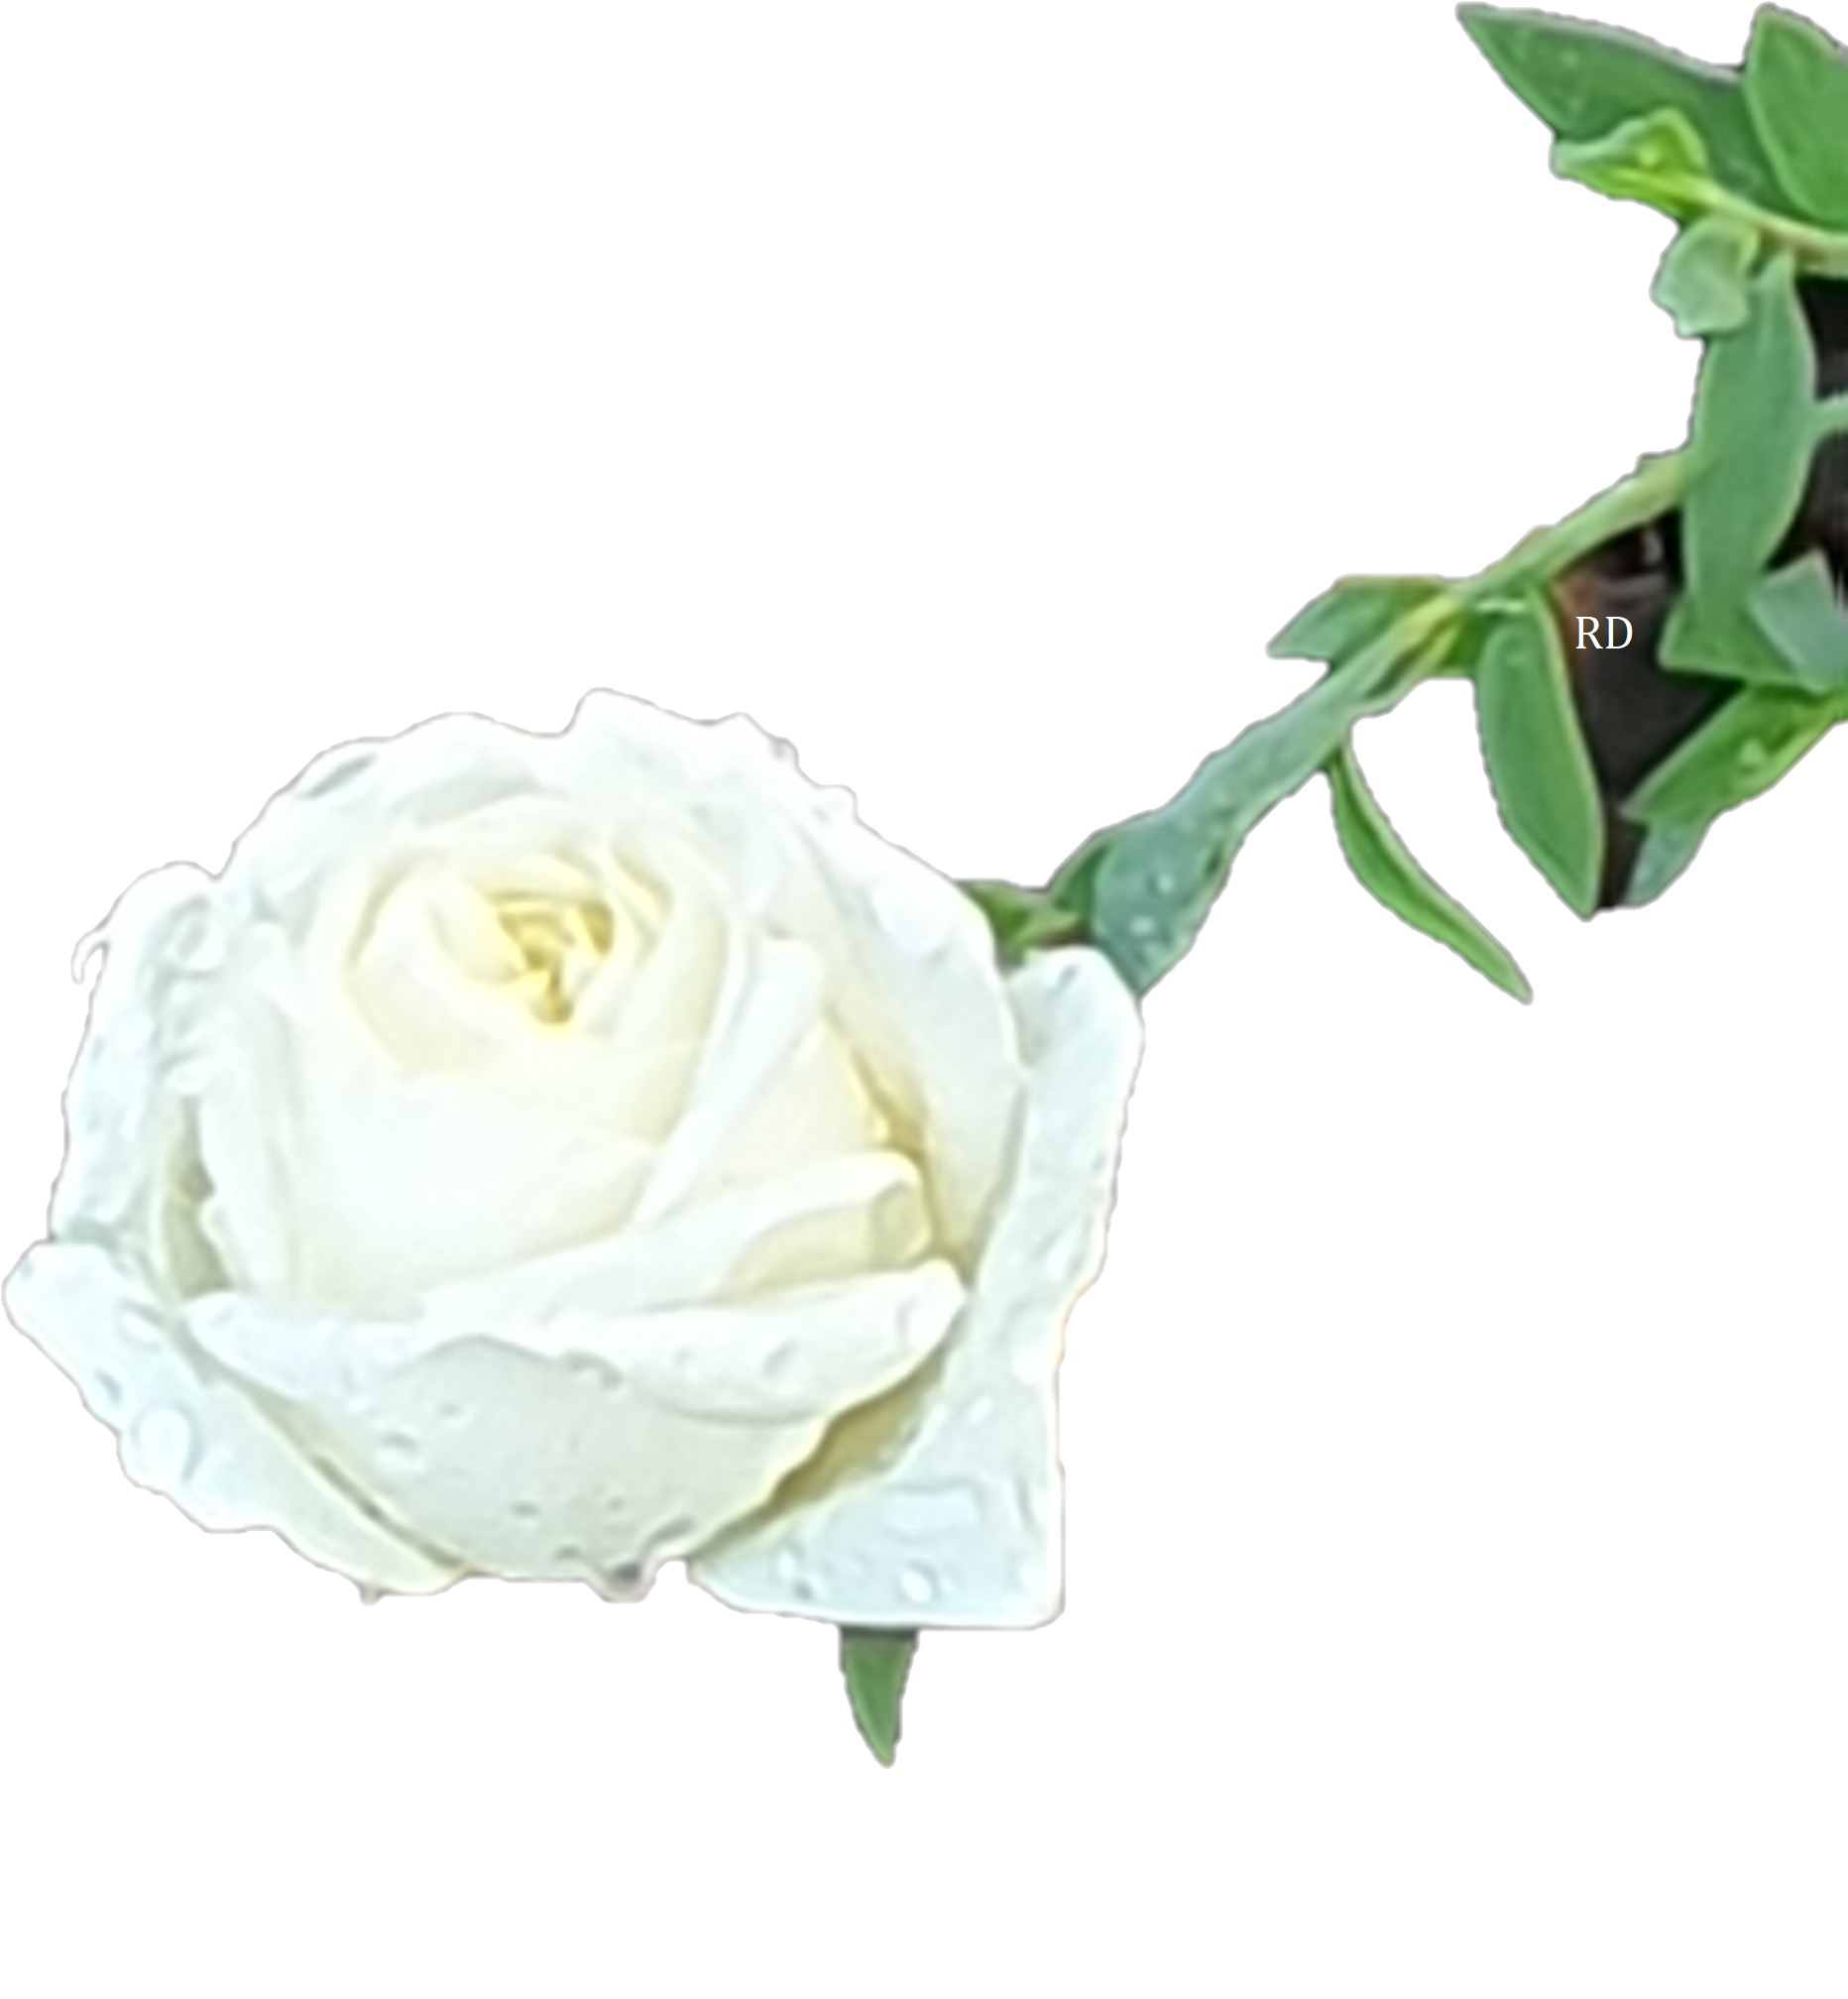 Rose blanche.jpg